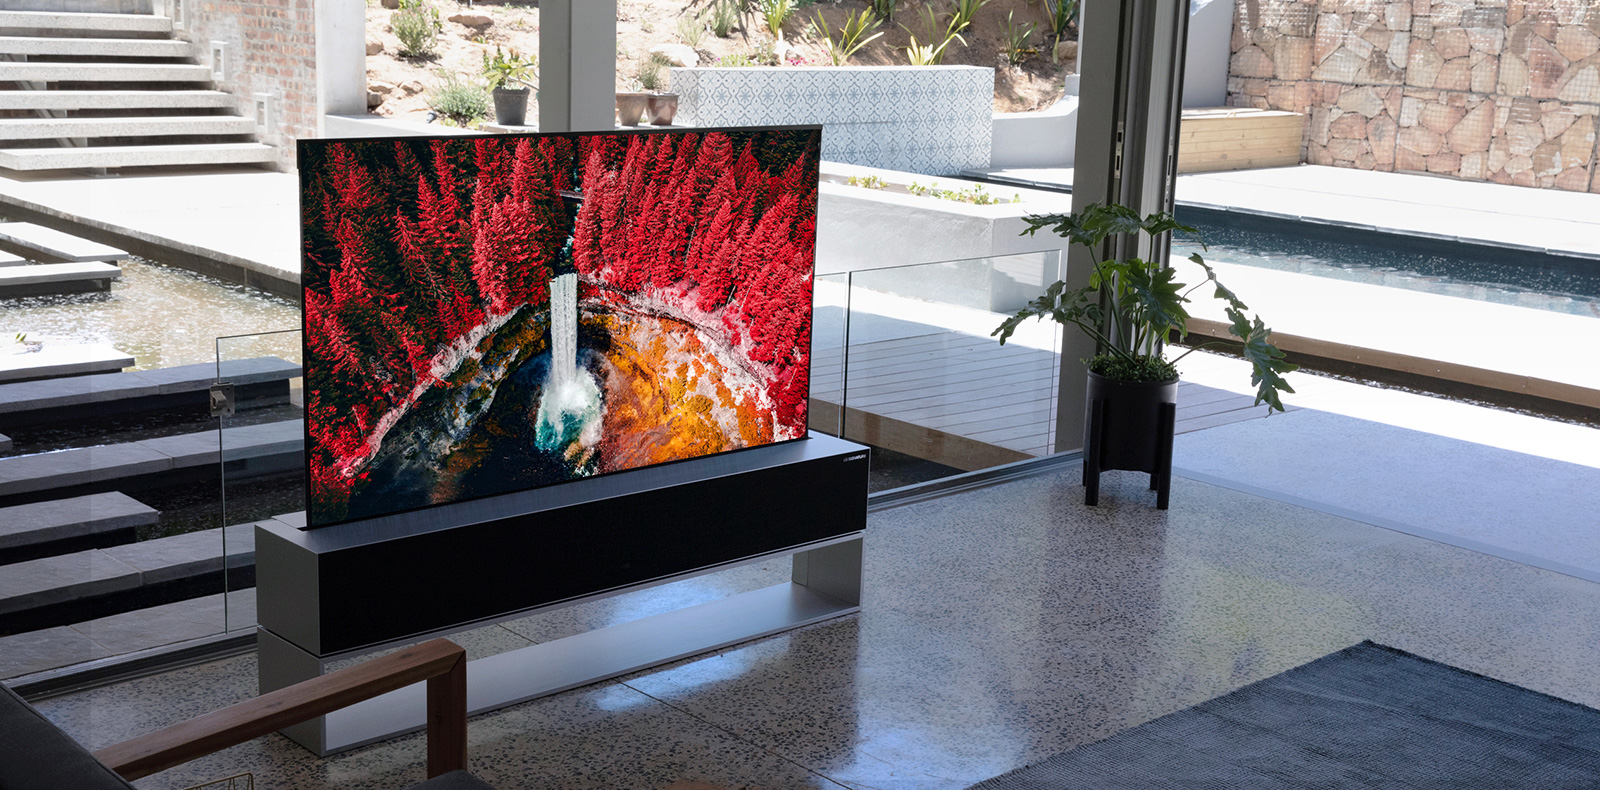 LG оголосила про початок продажу першого в світі телевізора, що згортається